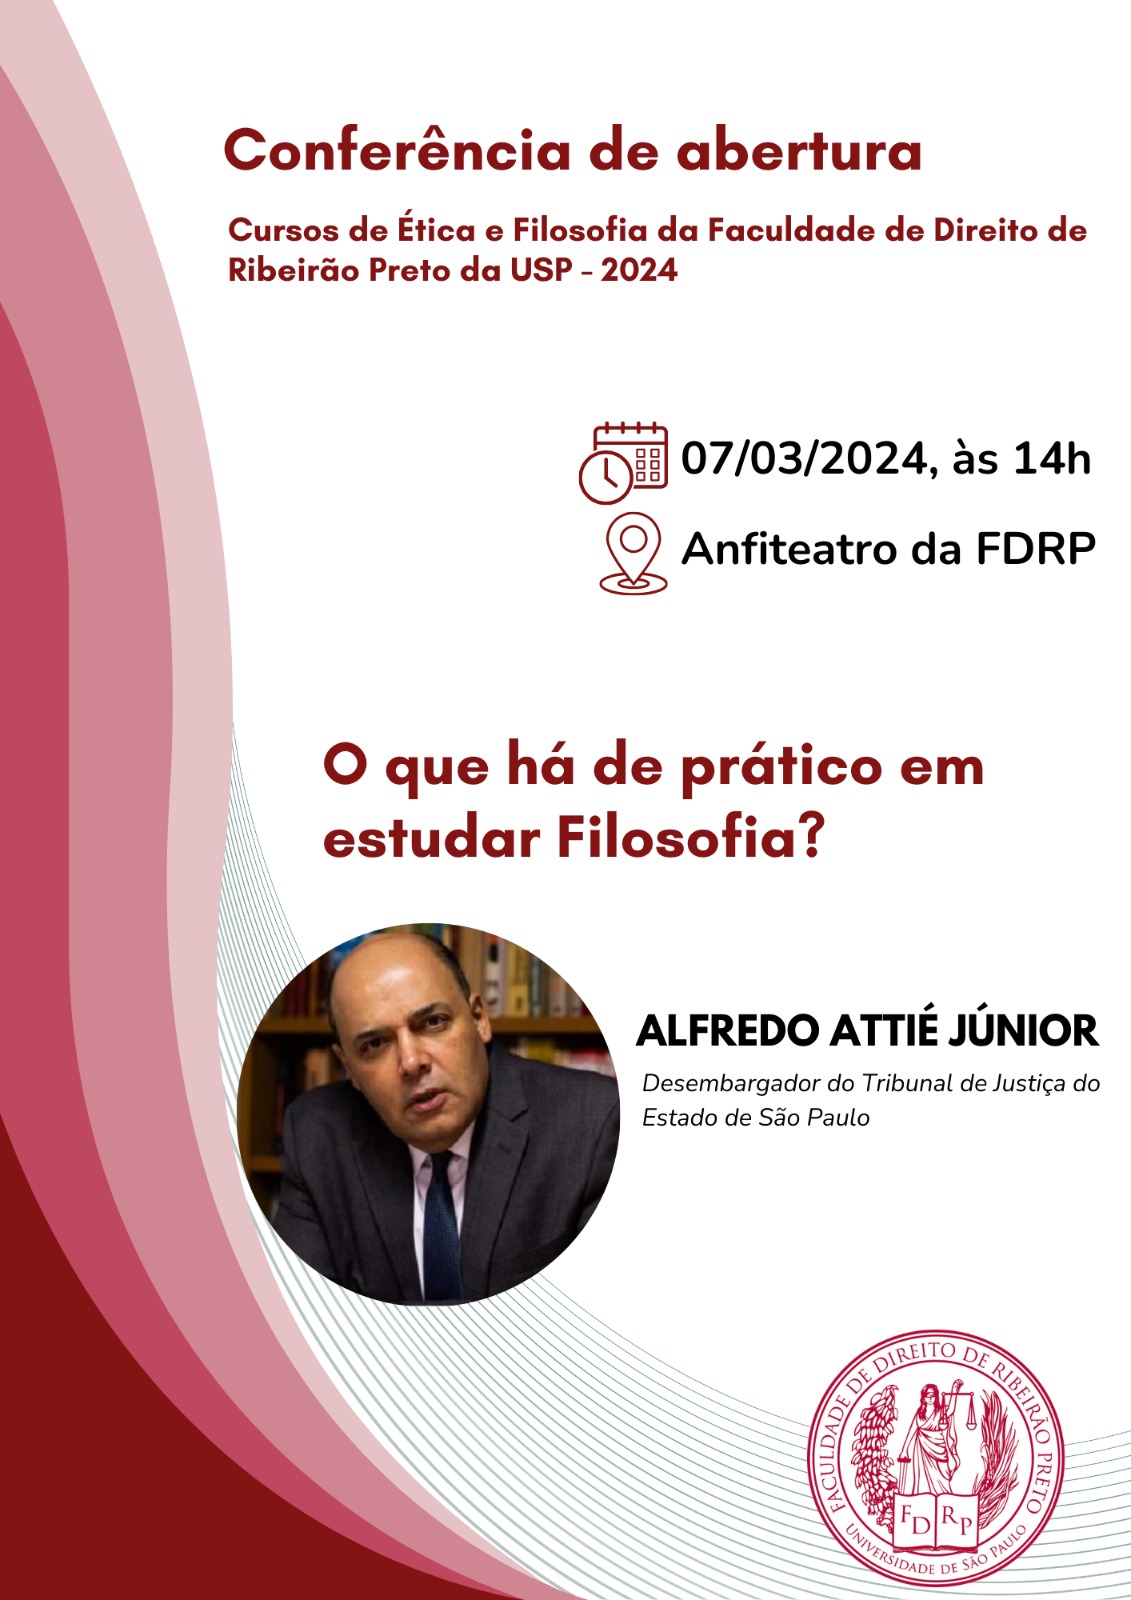 Attié em Conferência Inaugural na USP, em Ribeirão Preto.